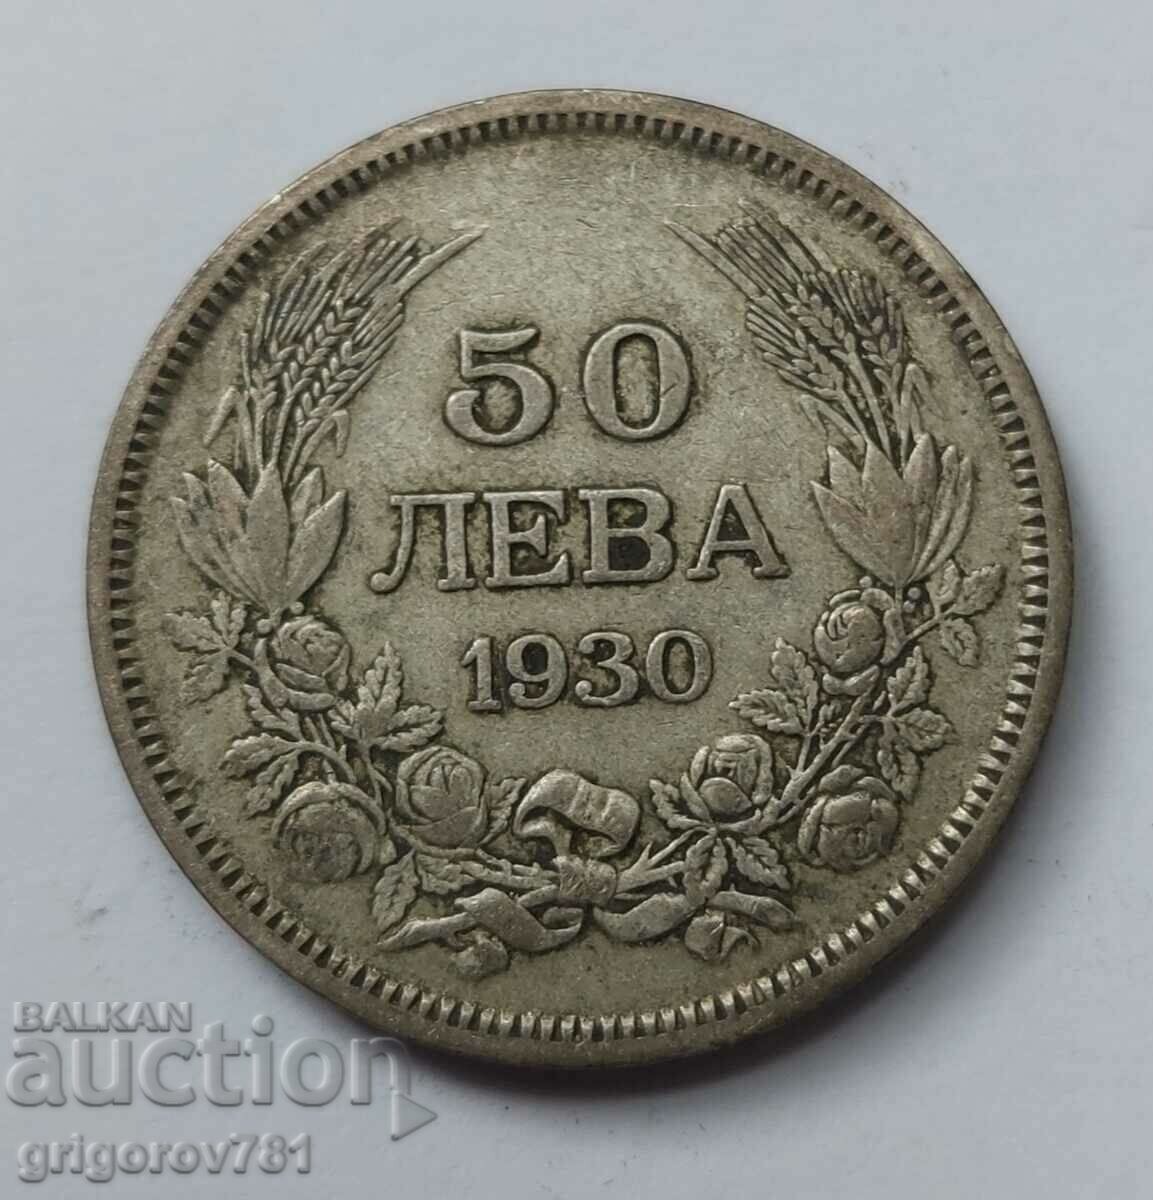 Ασήμι 50 λέβα Βουλγαρία 1930 - ασημένιο νόμισμα #54